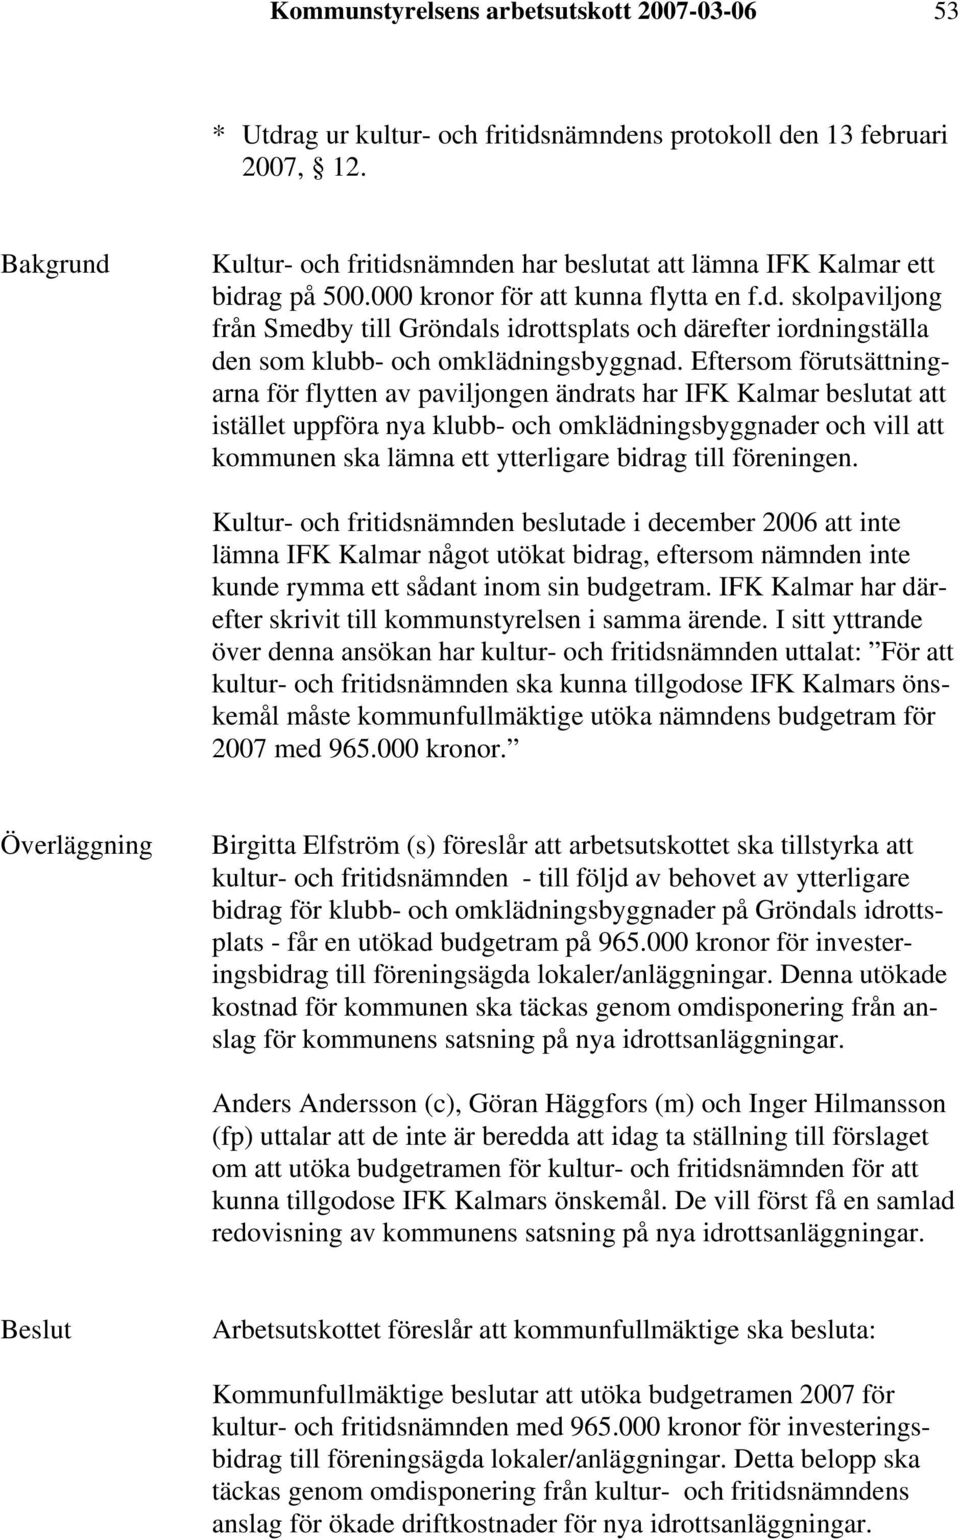 Eftersom förutsättningarna för flytten av paviljongen ändrats har IFK Kalmar beslutat att istället uppföra nya klubb- och omklädningsbyggnader och vill att kommunen ska lämna ett ytterligare bidrag